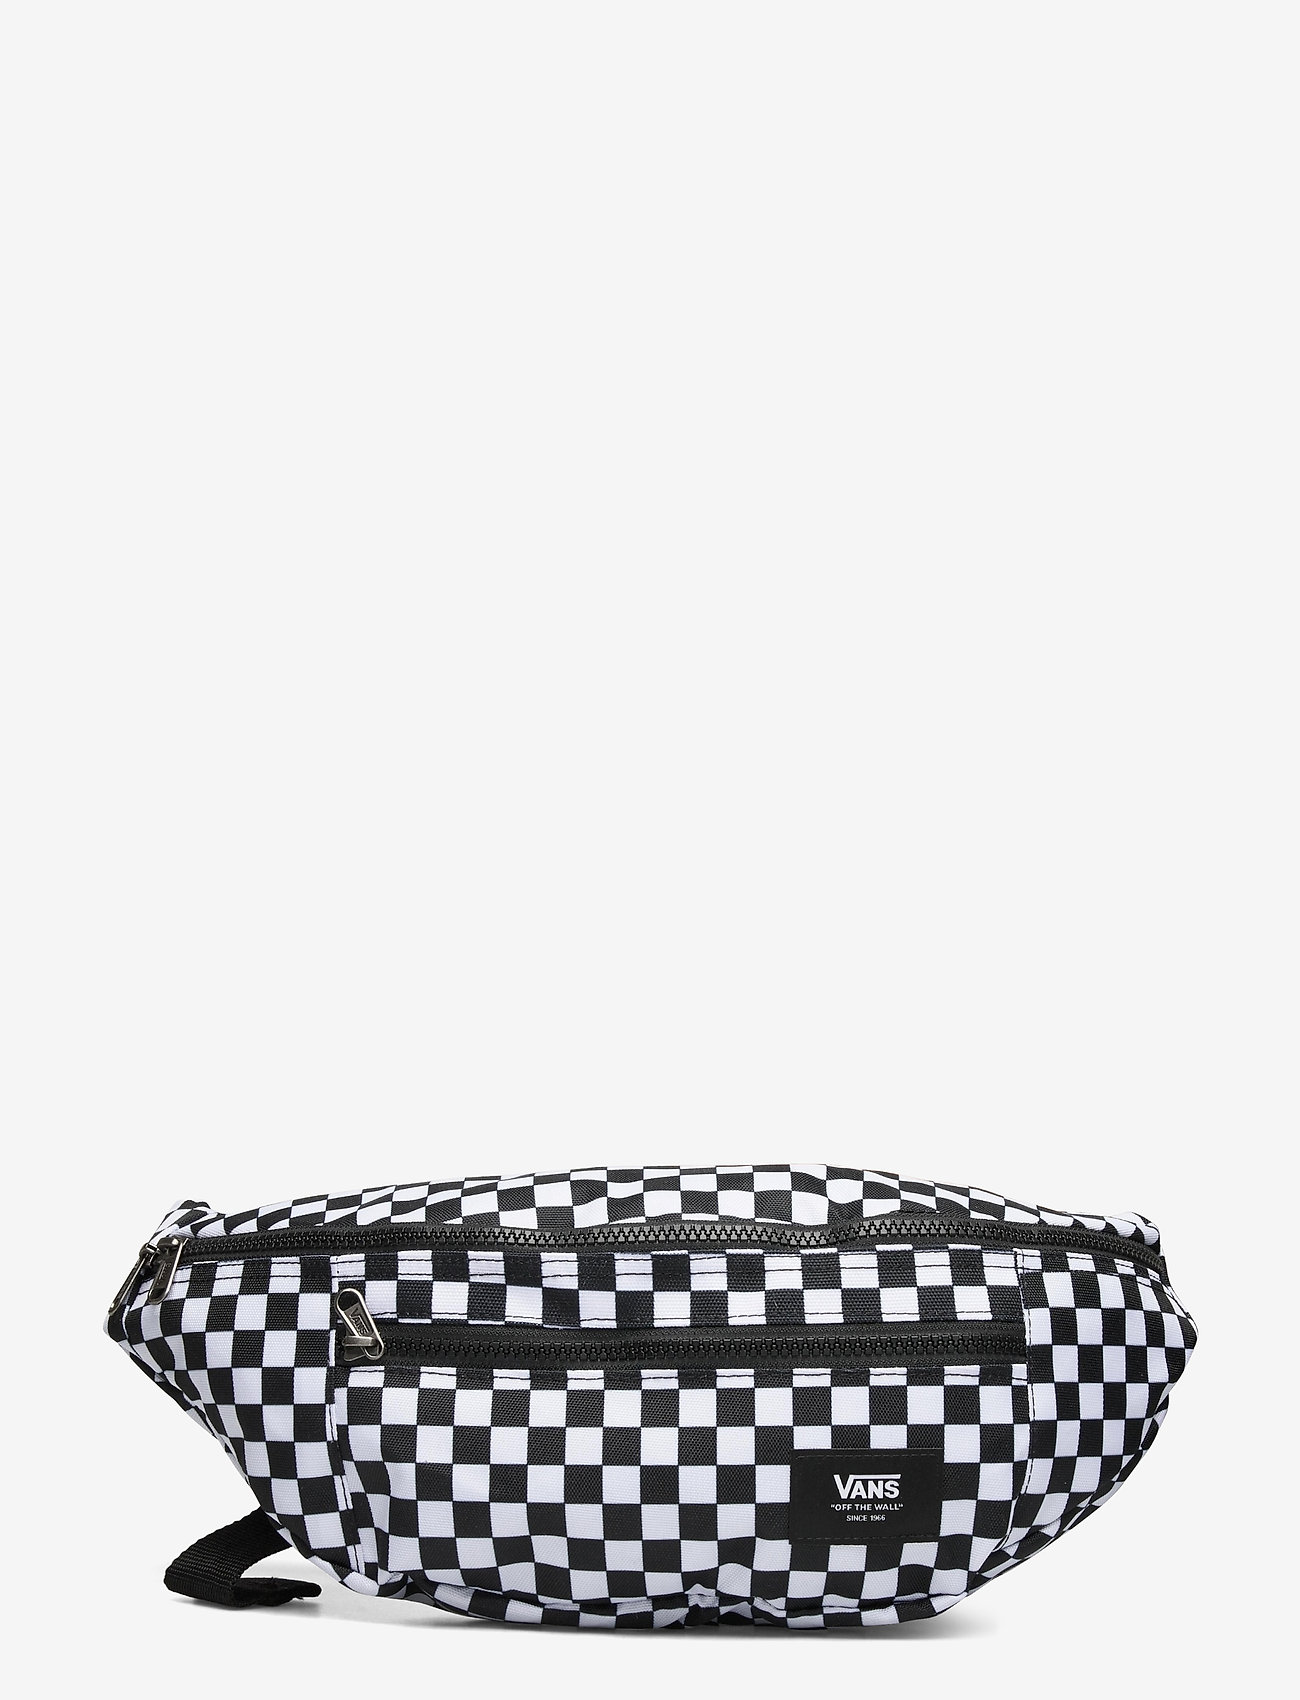 vans ward black & white checkered cross body pack